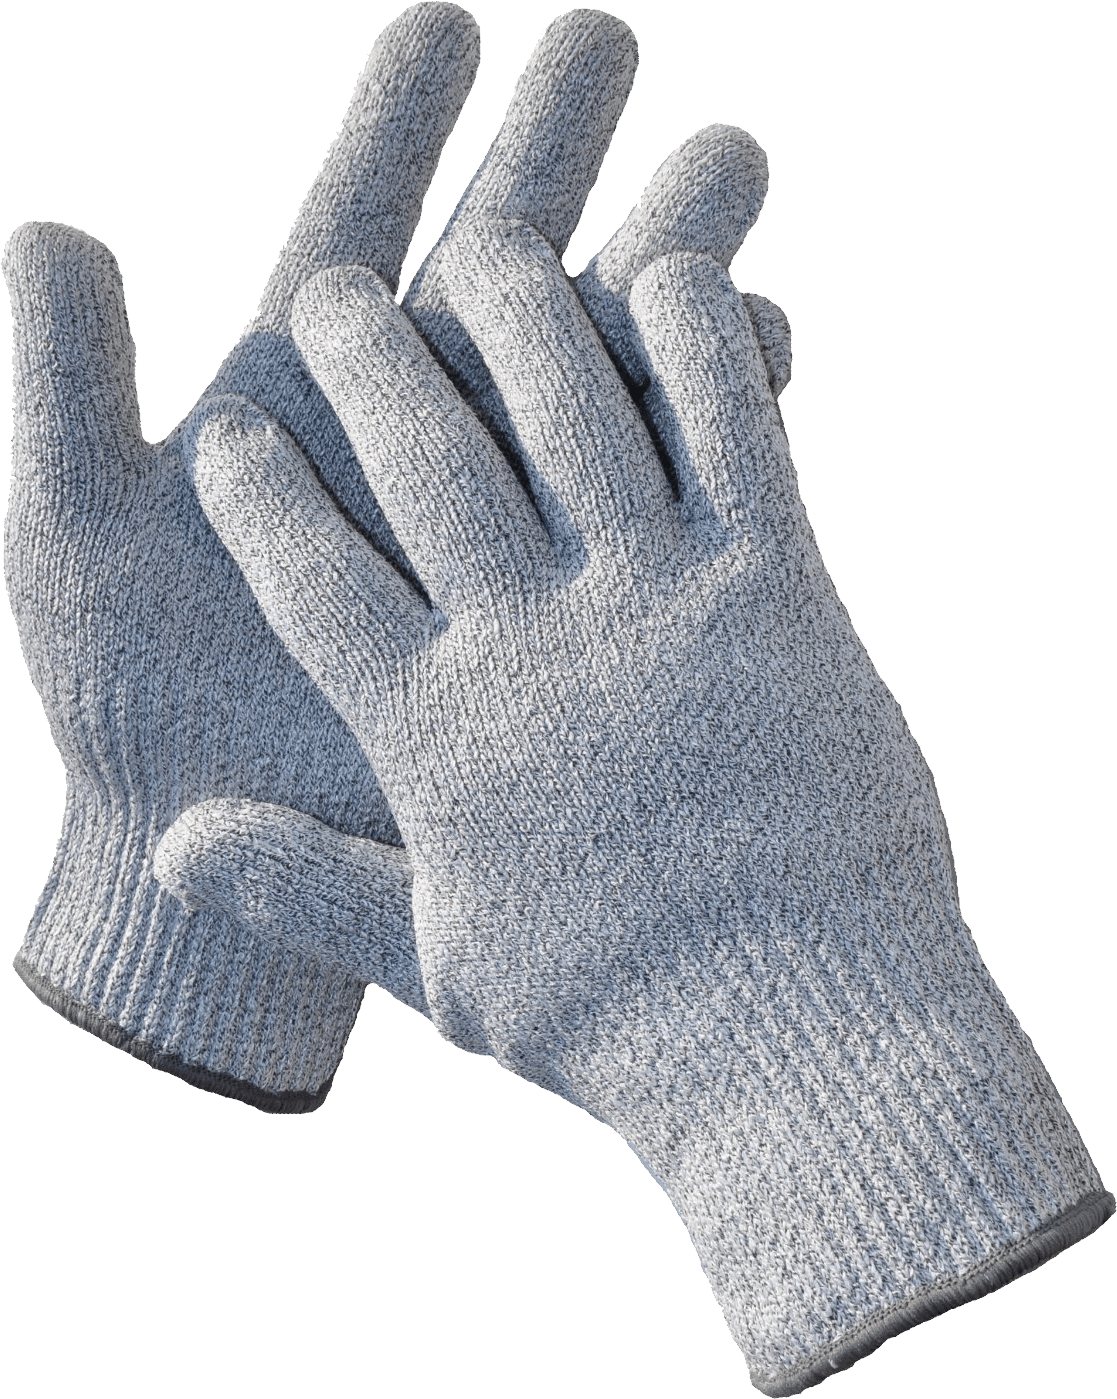 Winter Gloves Png Image PNG I